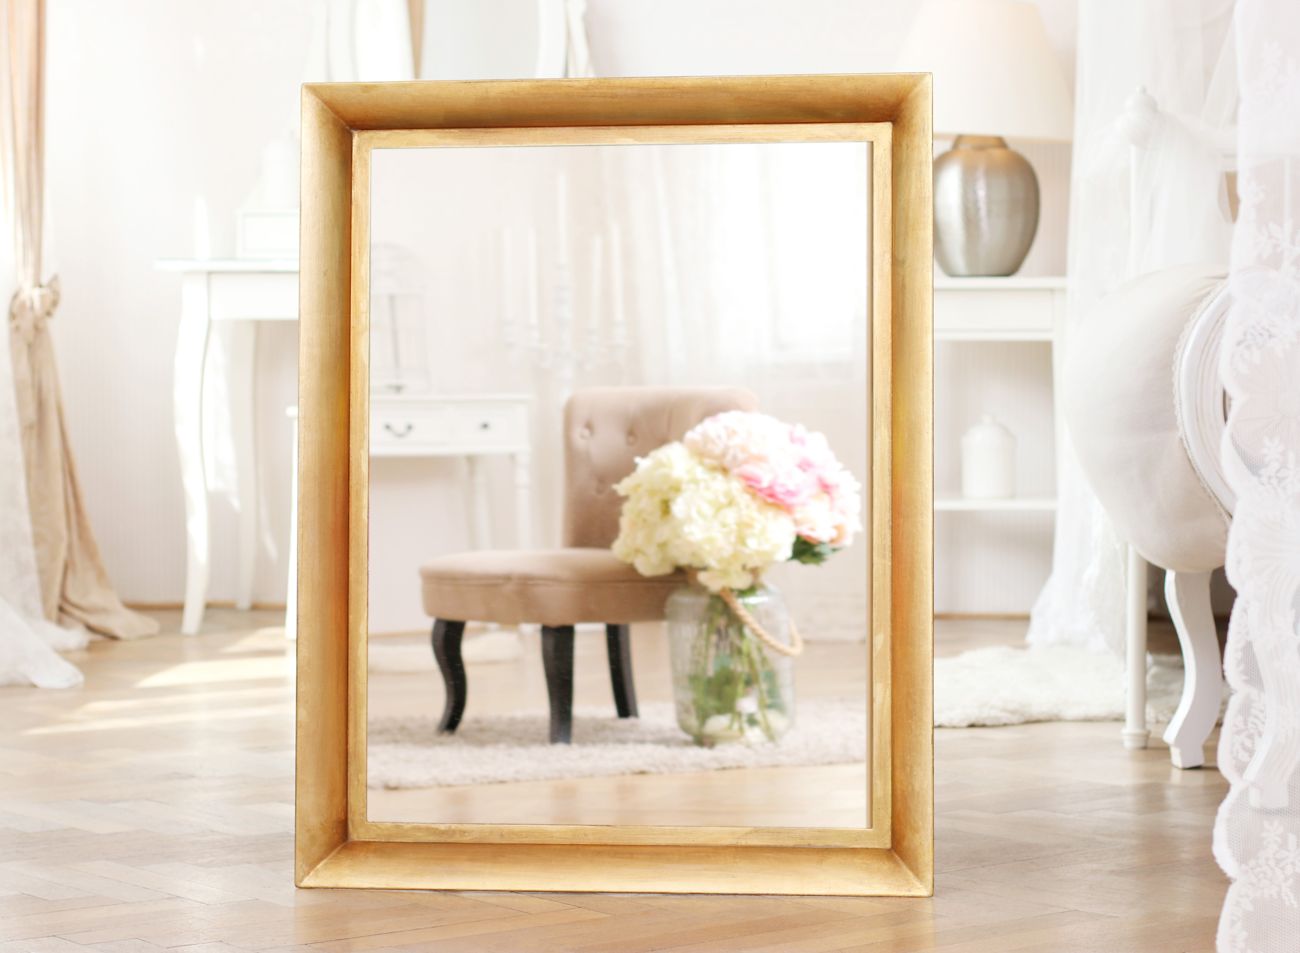 Luxusní zlaté zrcadlo tvaru otevřeného křídla | © Frame-it.cz